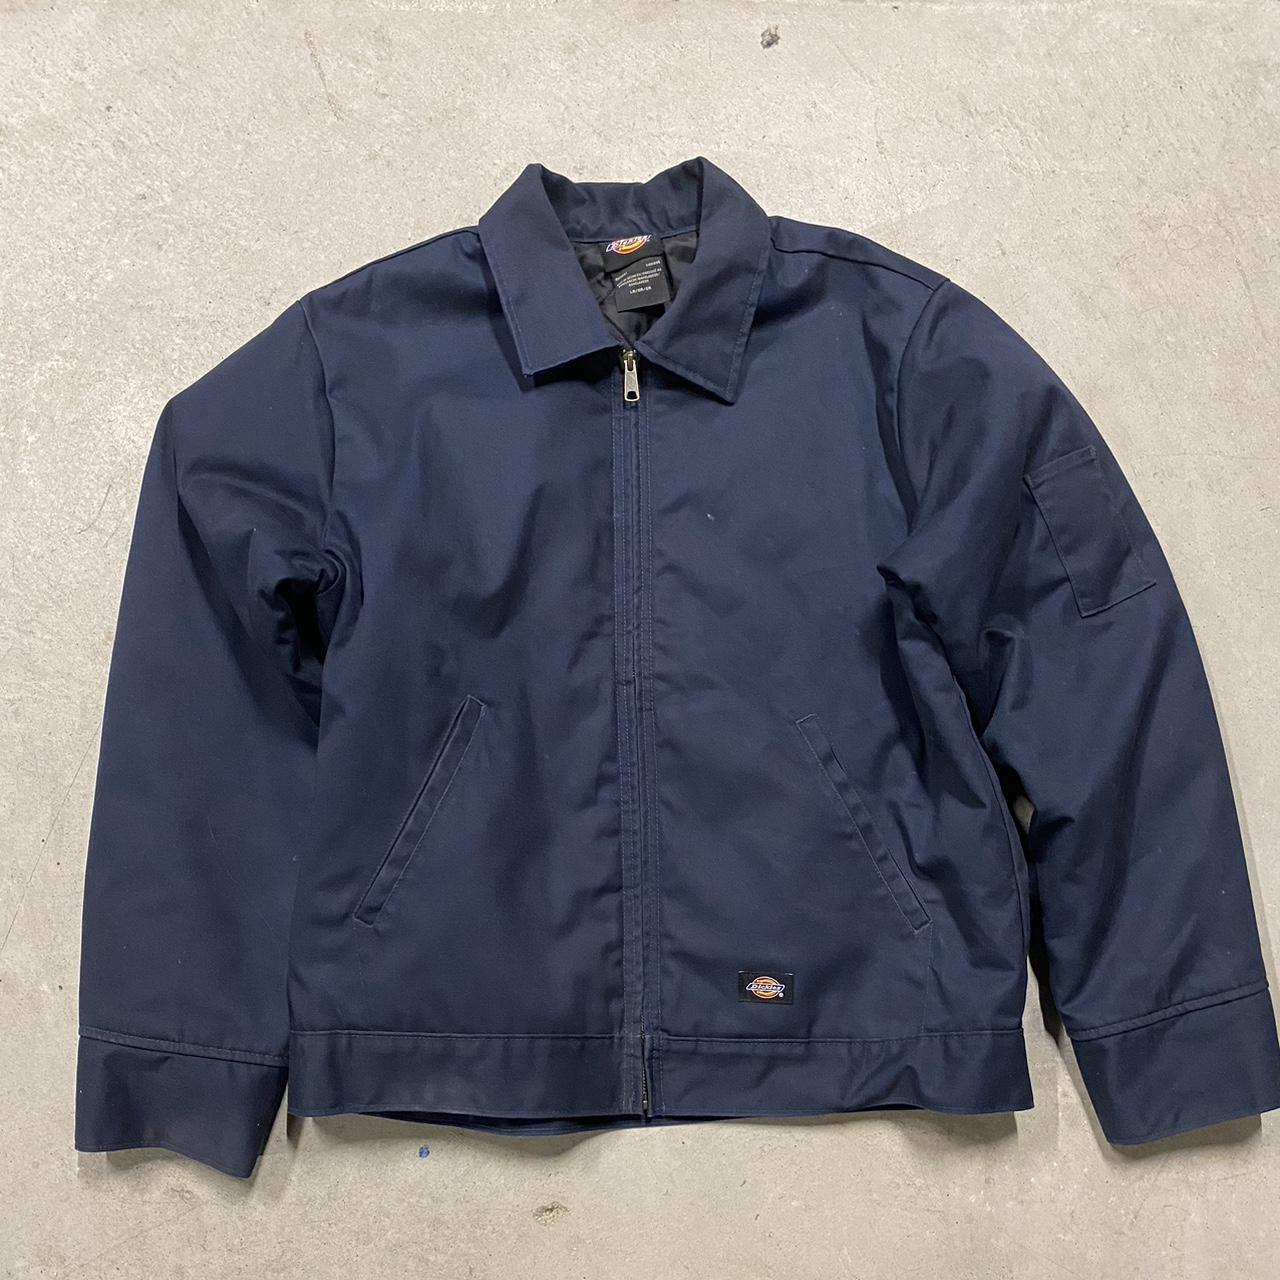 Large vintage dickies jacket - Depop